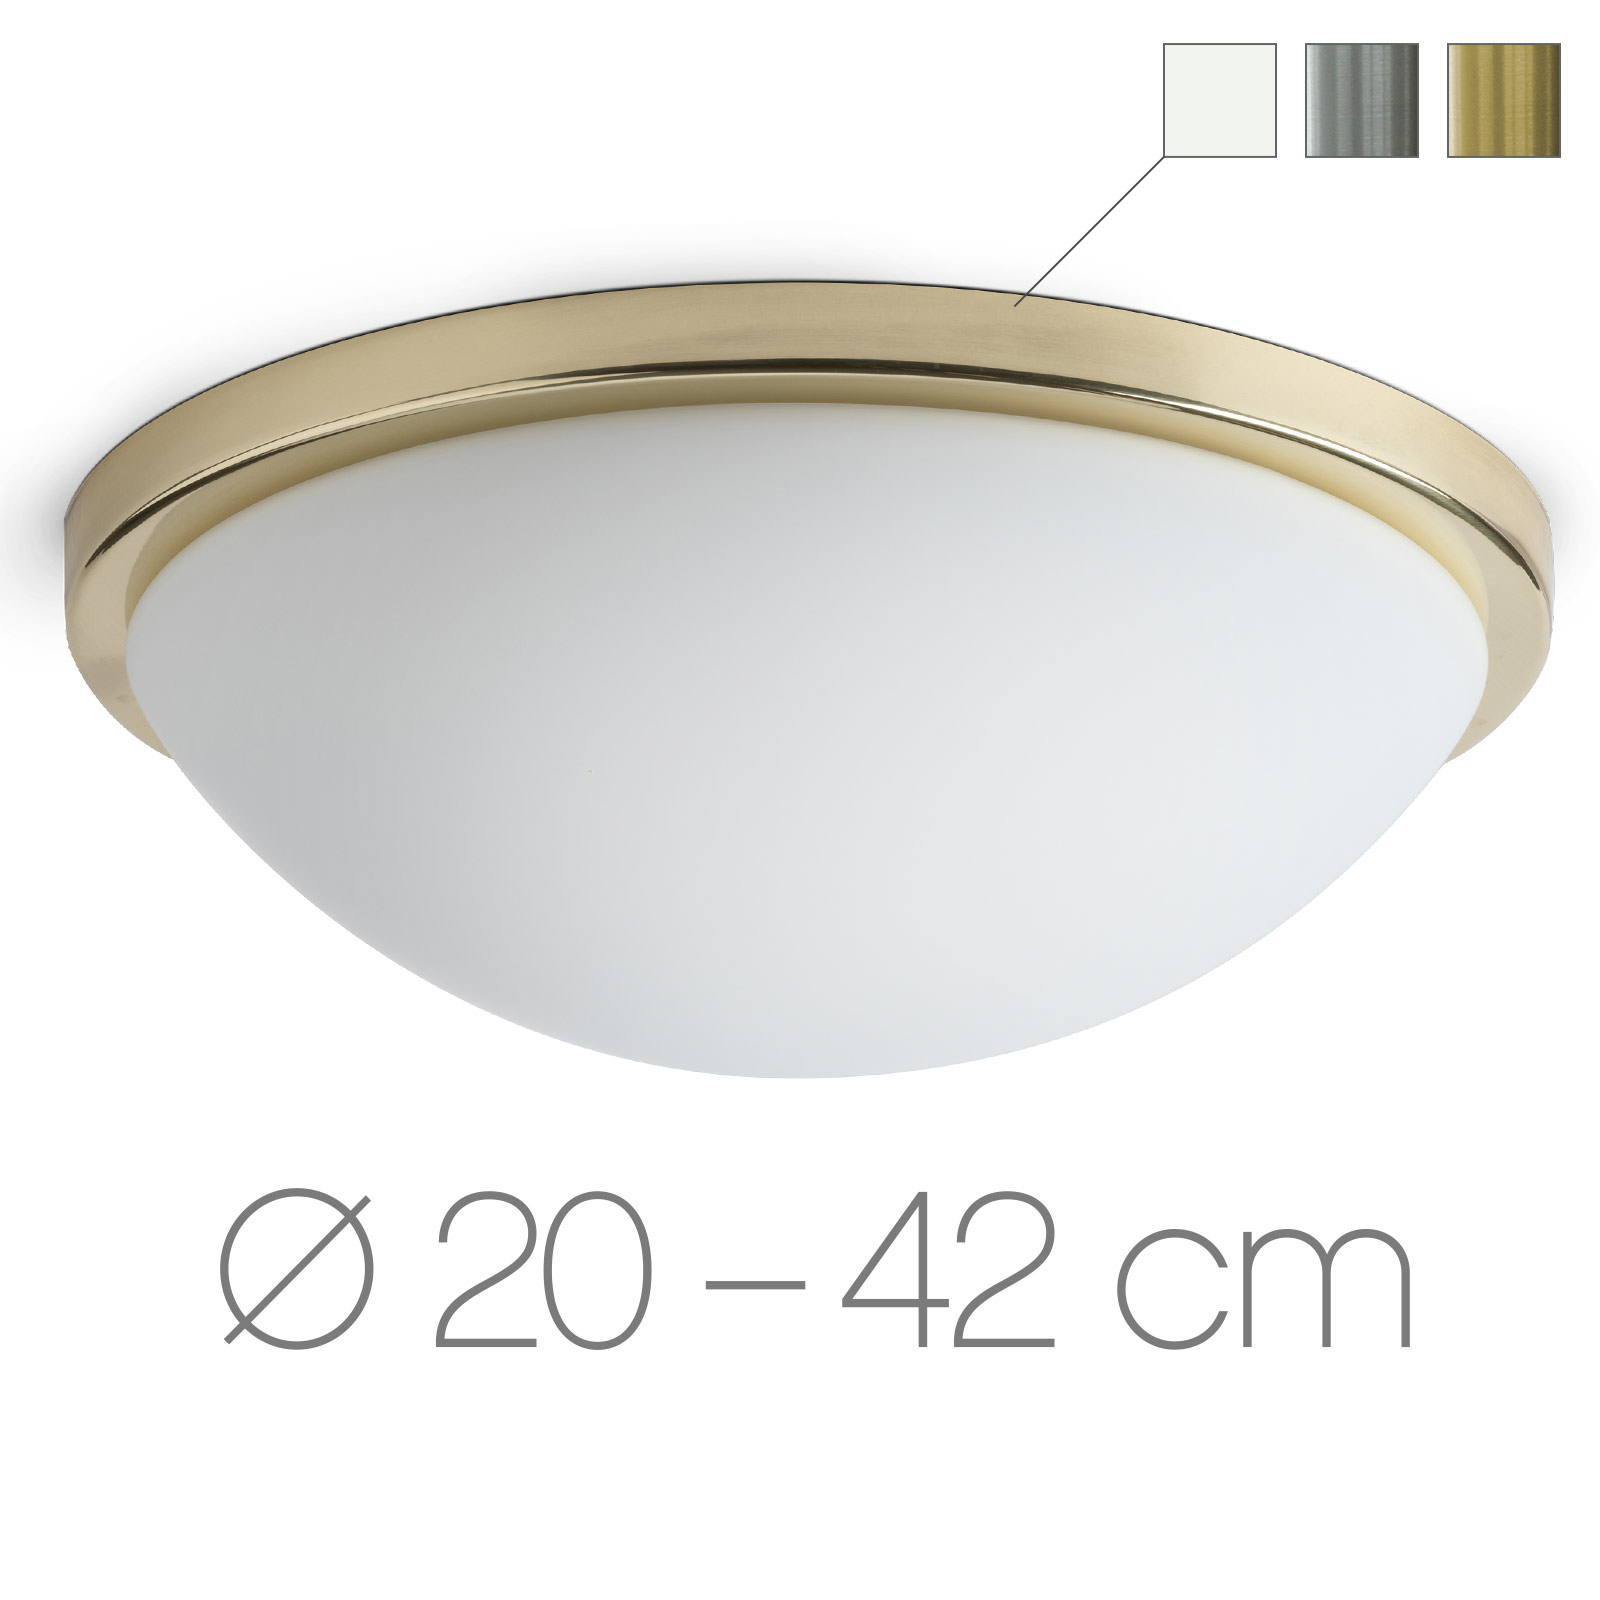 Opalglas-Deckenleuchte mit Ring AURORA R2, Ø 20 bis 42 cm